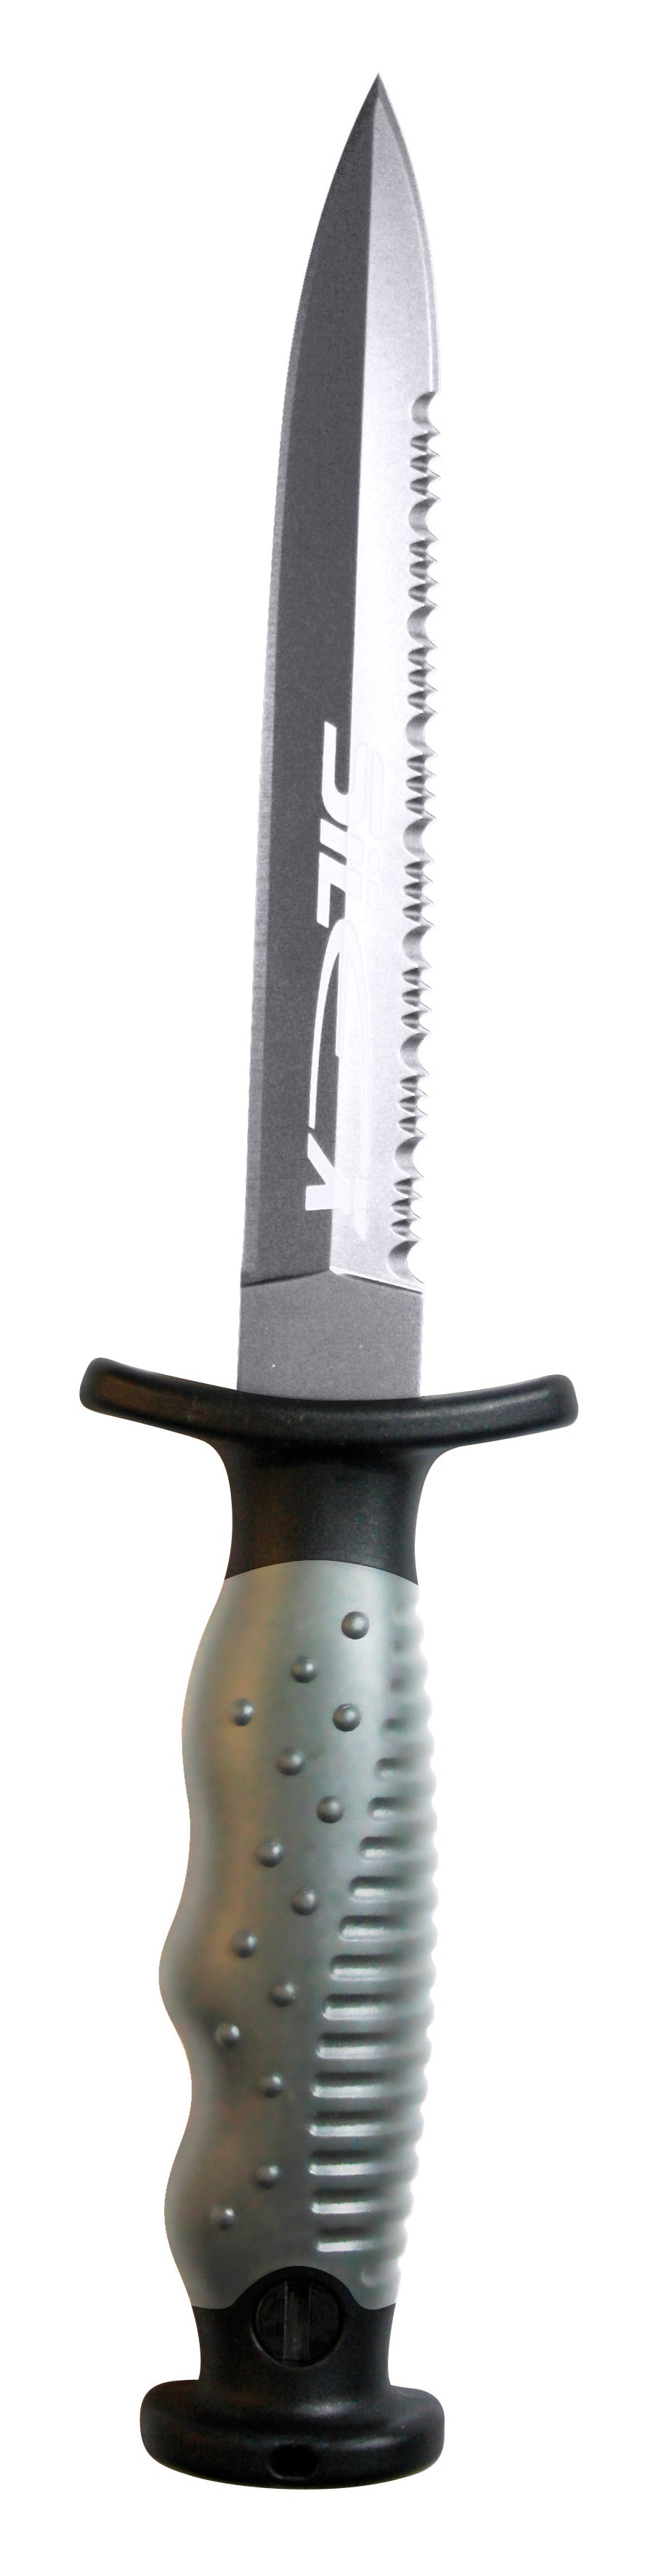 Epsealon Silex Dagger Dive Knife - Stainless Steel - Spear America